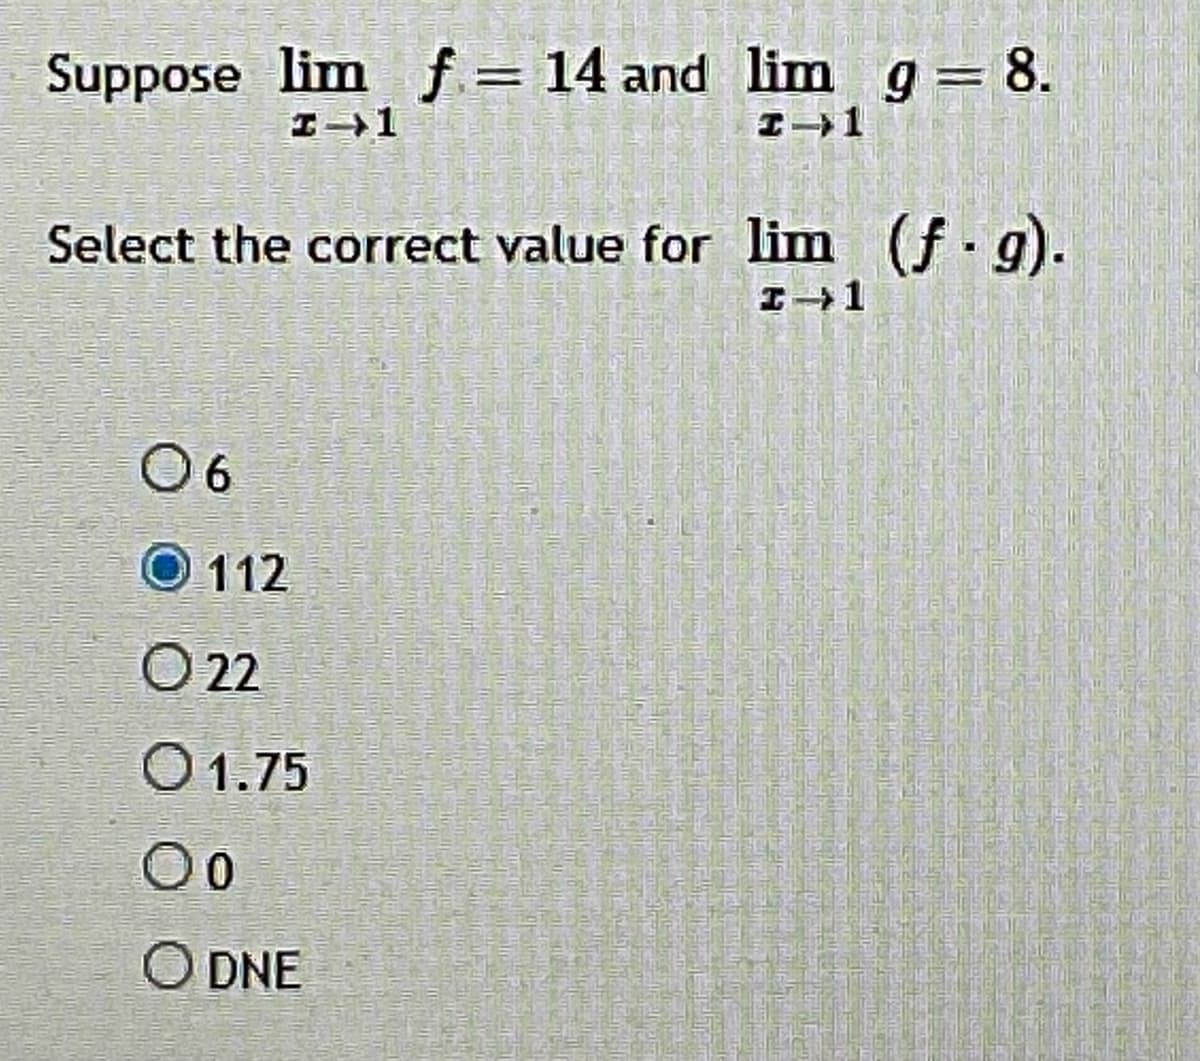 Suppose lim f = 14 and lim g= 8.
%3D
Select the correct value for lim (f. g).
O6
O 112
2
O1.75
00
O DNE
